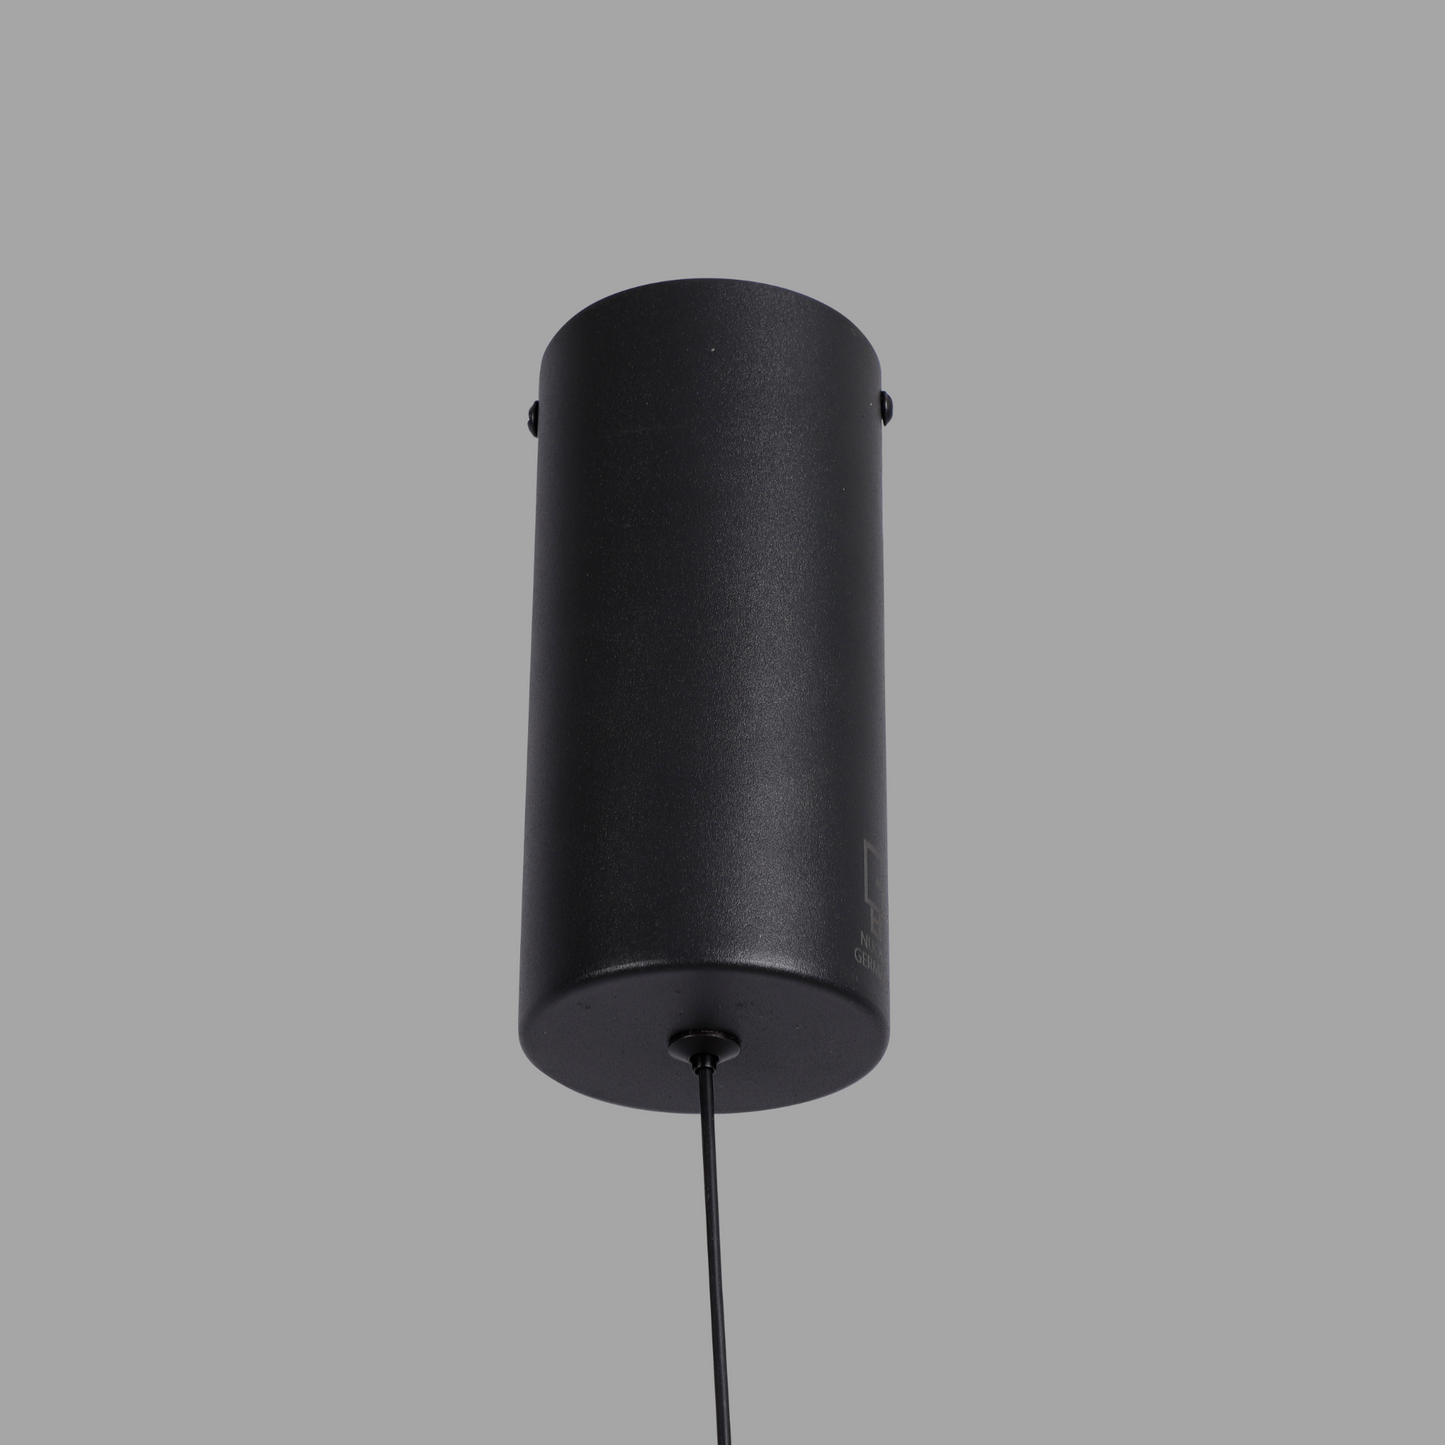 Lampadario Sospeso: 1716 design moderno minimalista con illuminazione a Led 360 gradi